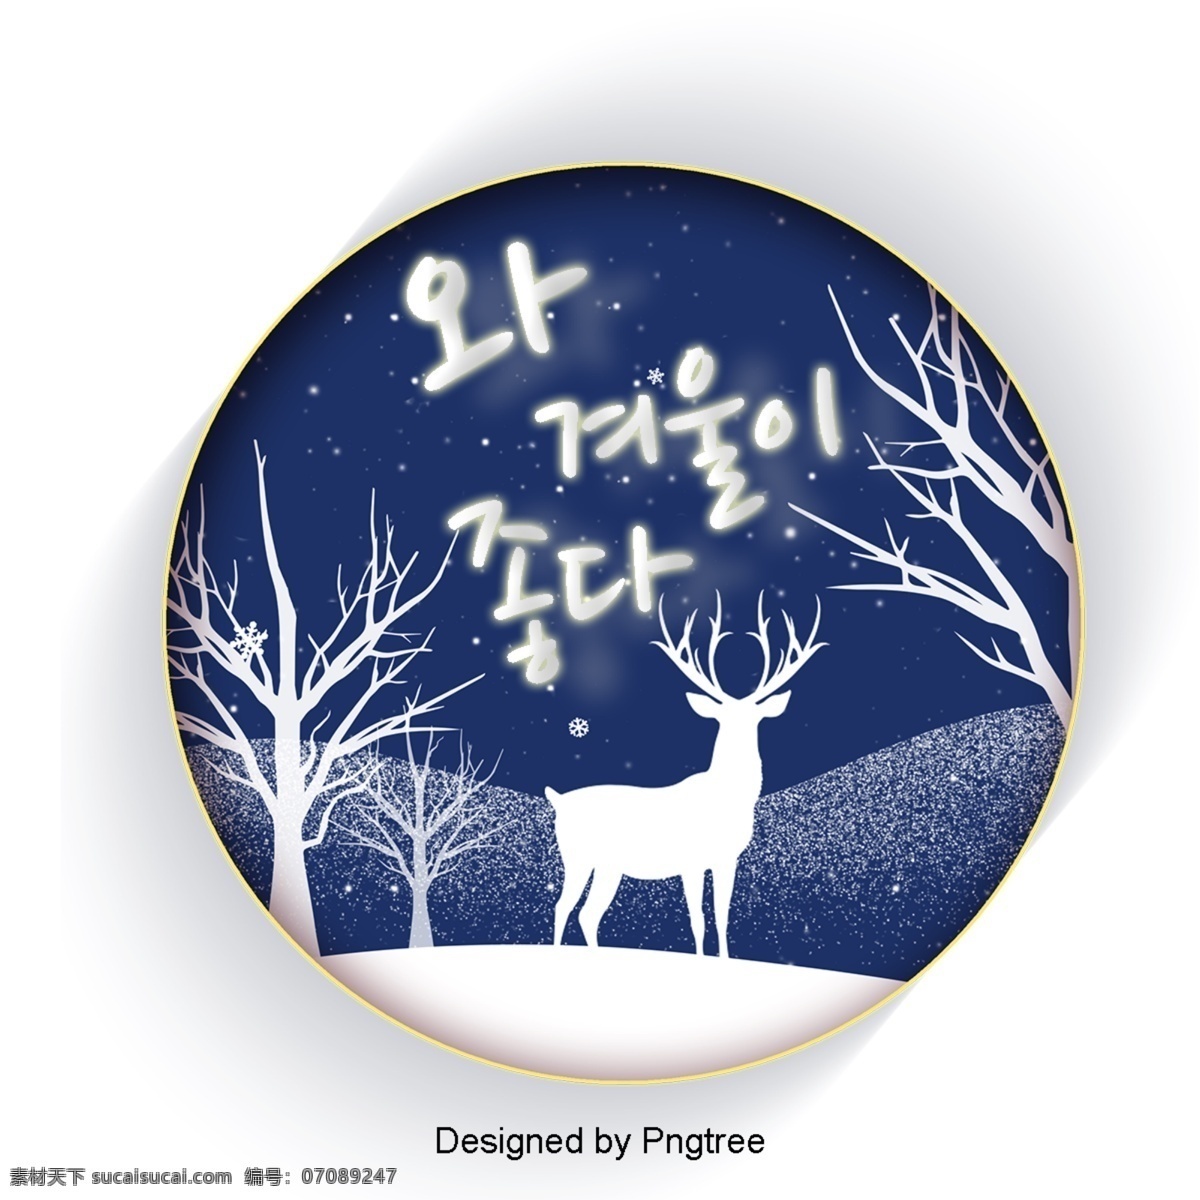 喜欢 明星 中 漂亮 字体 角色 冬季 林 的作用 晚 星光 可爱 字形